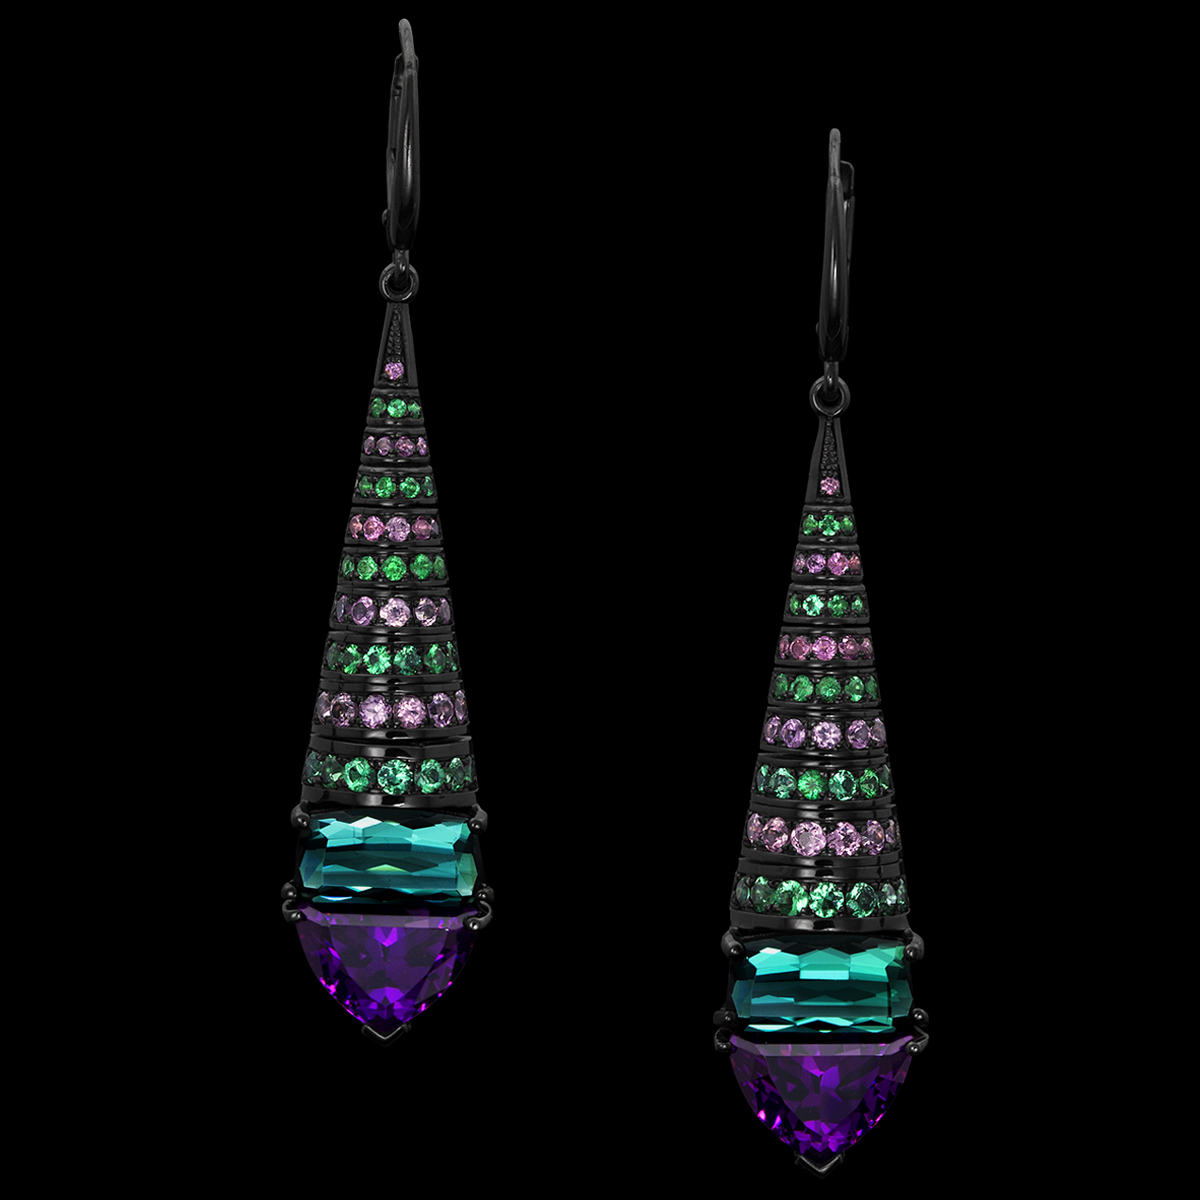 Серьги Asteria ослепительны и драматичны. Эти яркие серьги украшены набором королевских пурпурных гранатов и зеленых турмалинов